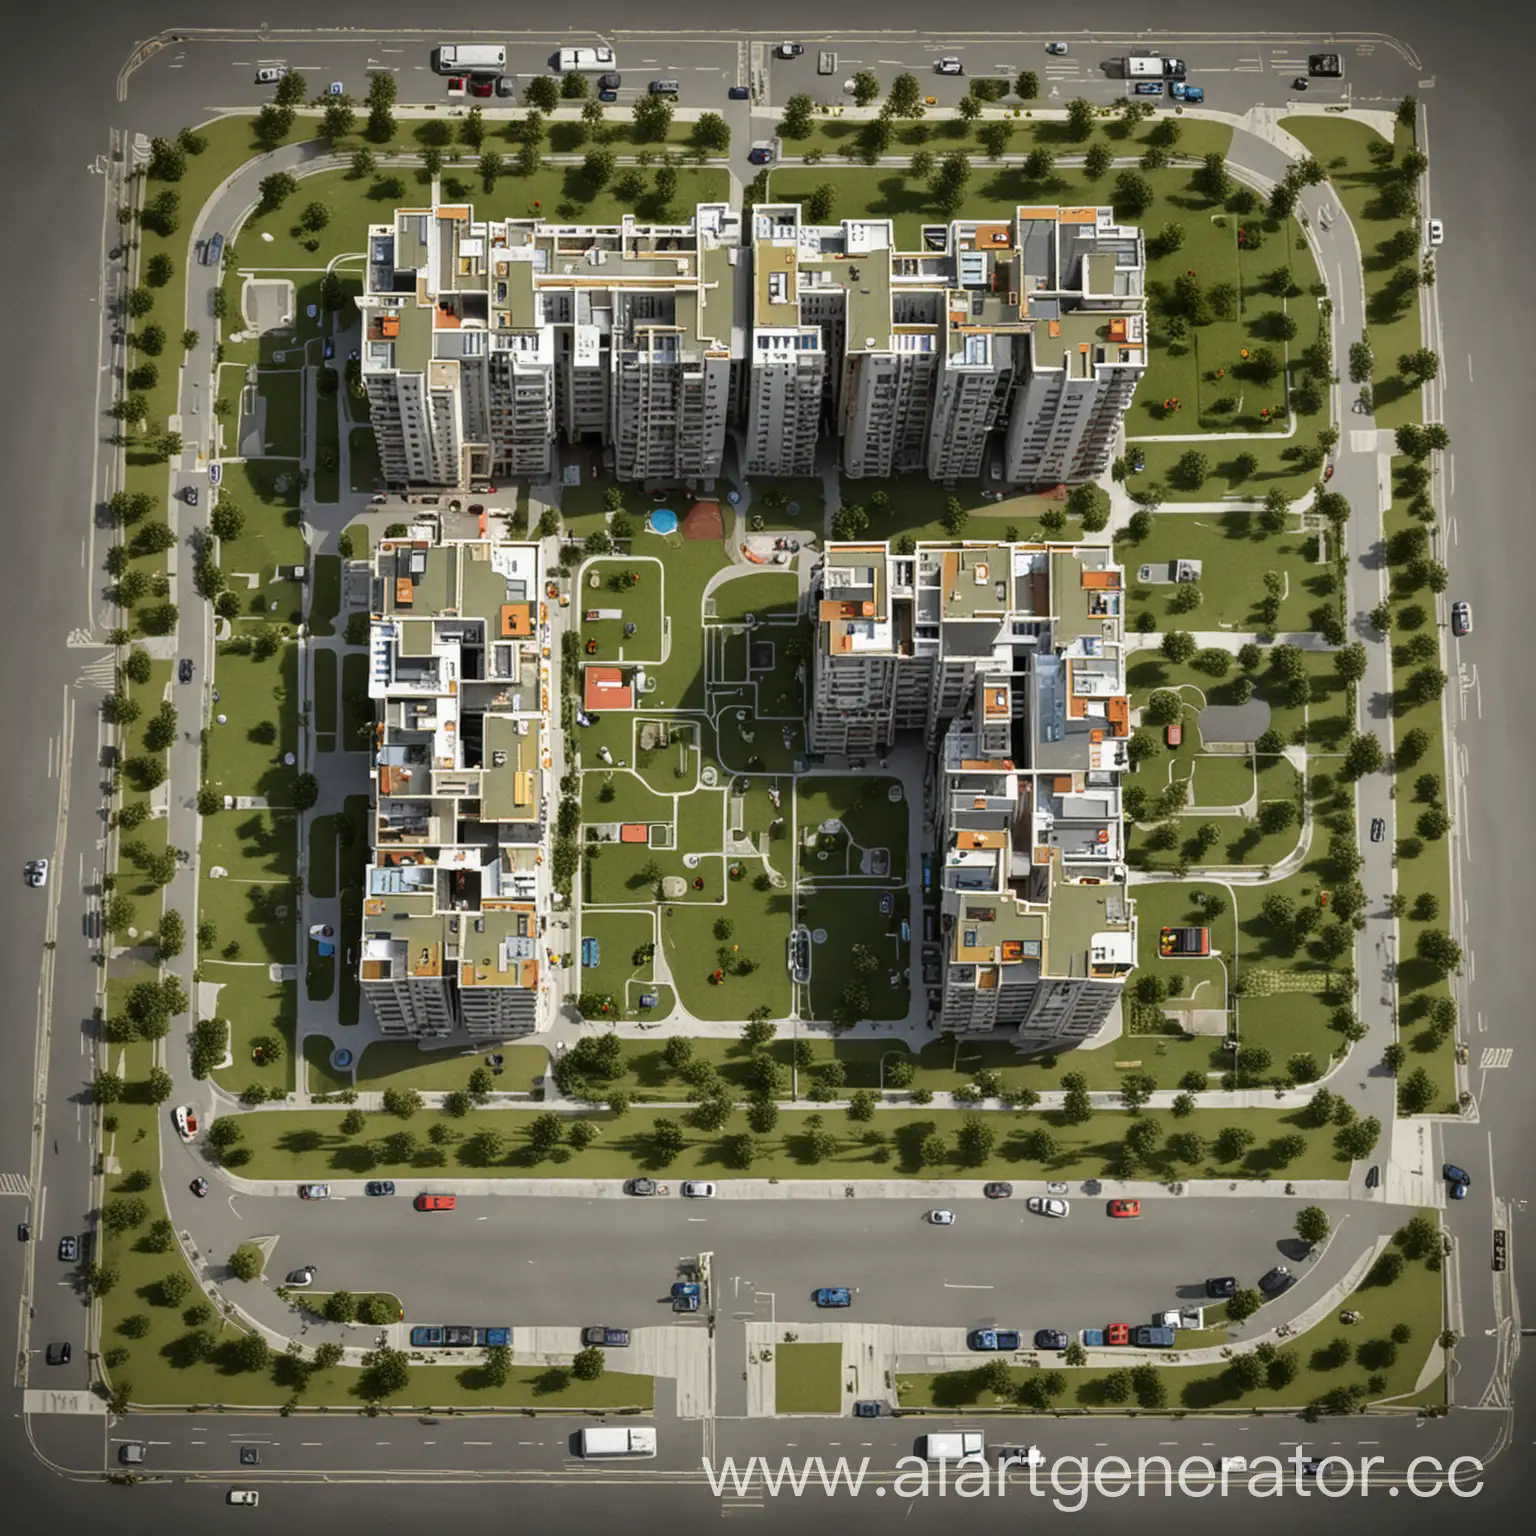 居住区，高楼，封顶，平面图，长150米，宽150米，景观设计，学区房，9栋楼，两列